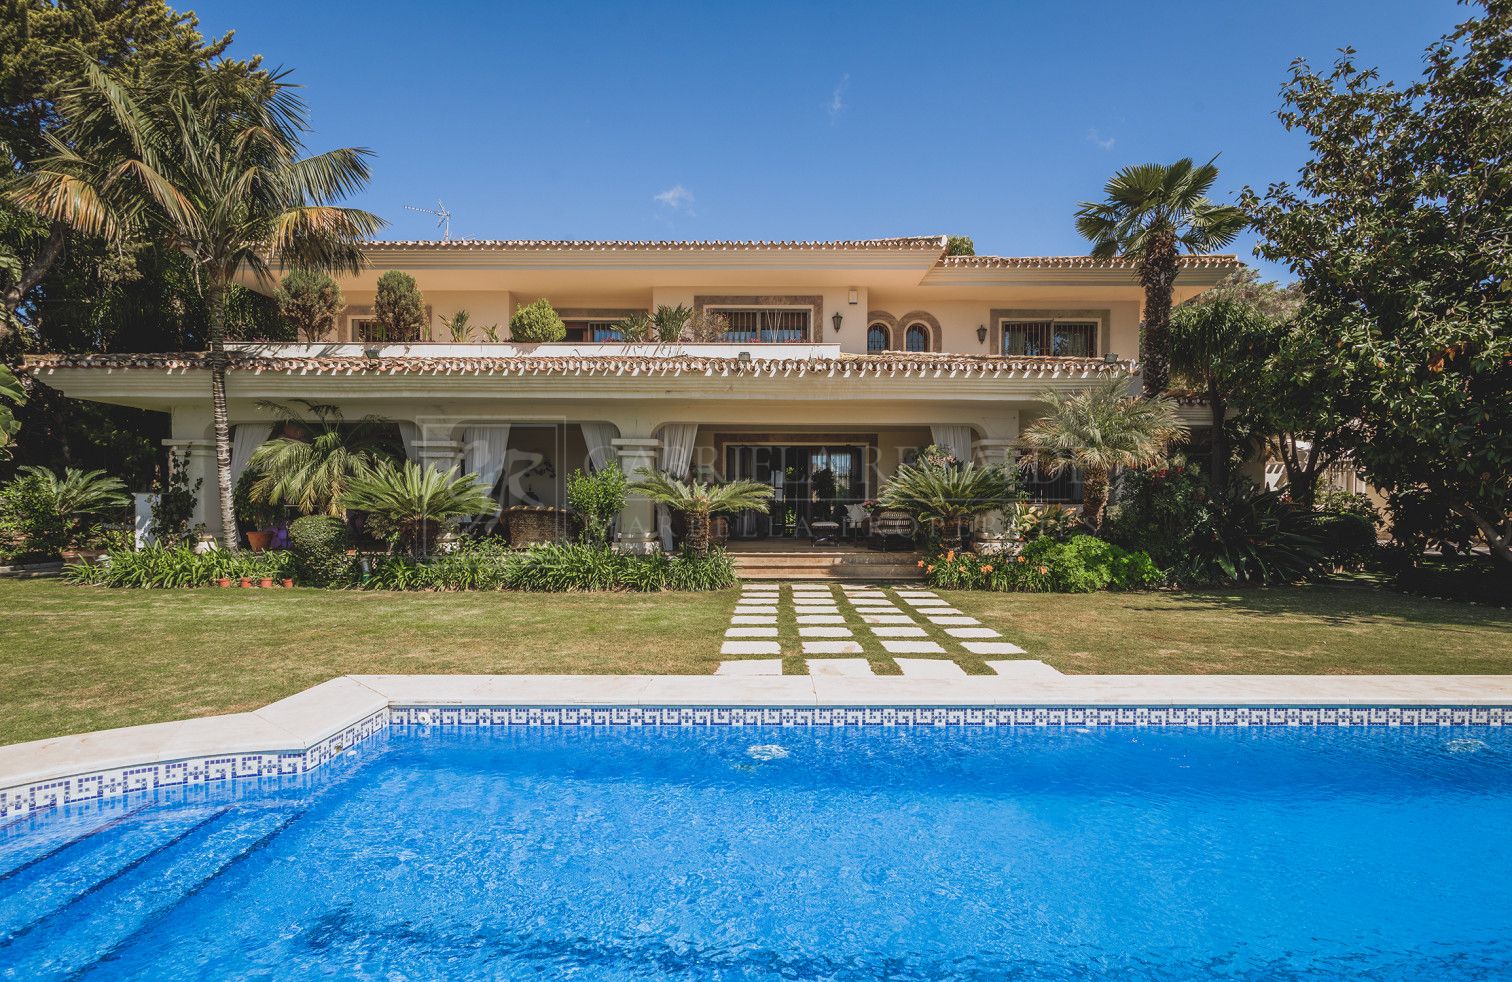 Villa orientada al sur con vistas al mar y montaña situada en Xarblanca, cerca del centro de Marbella.